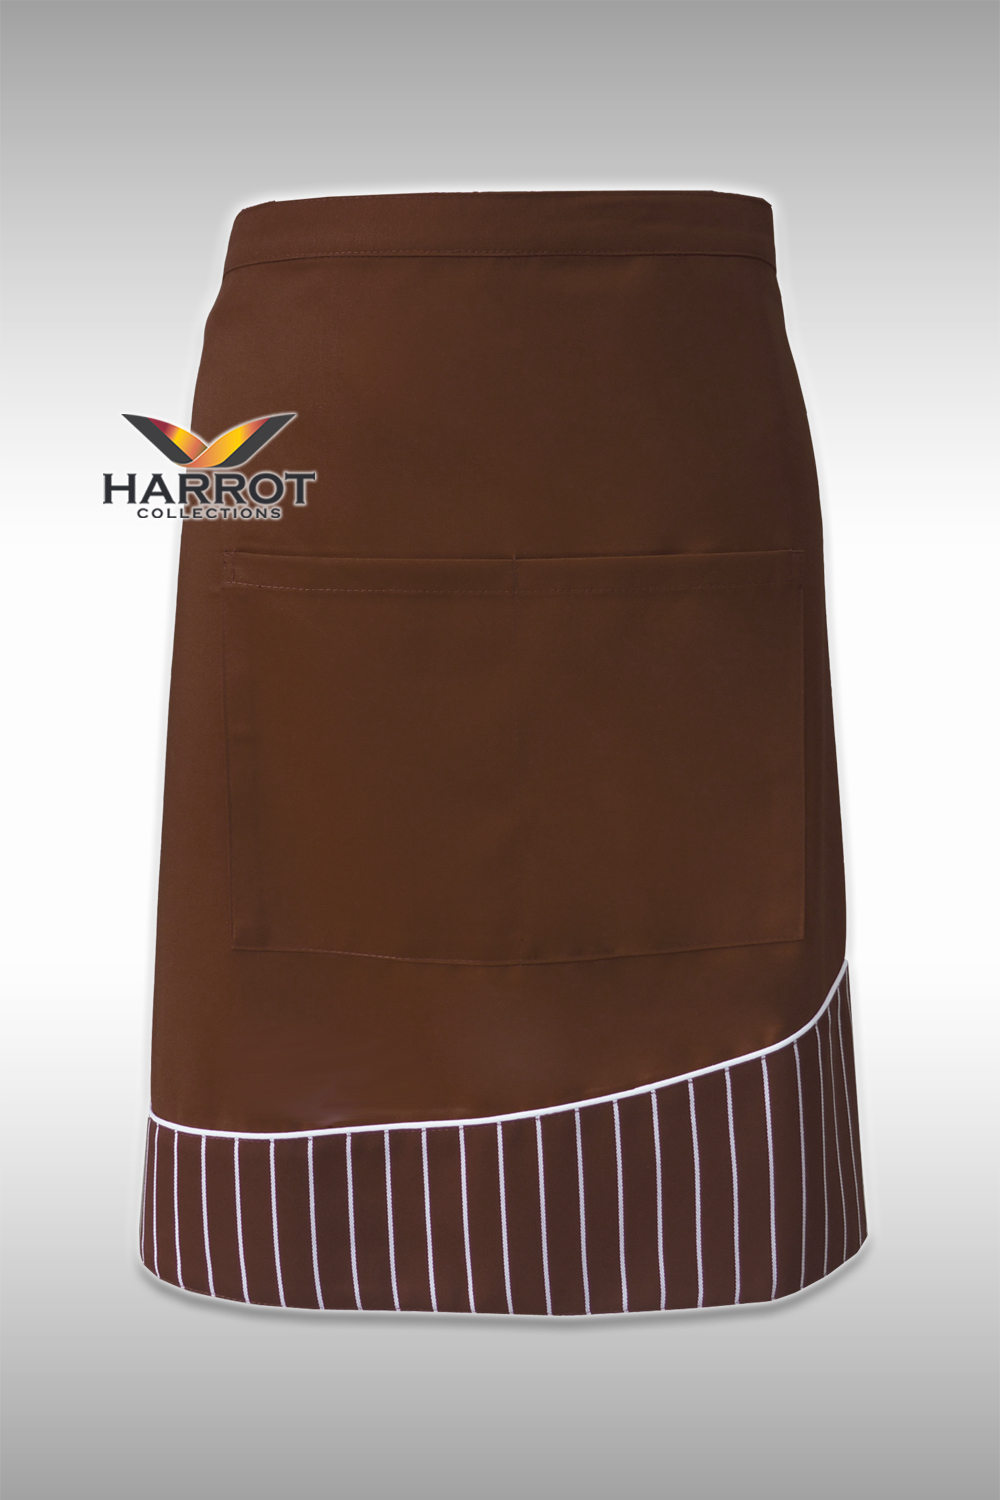 ผ้ากันเปื้อน ผ้ากันเปื้อนเชฟ ผ้ากันเปื้อนพ่อครัว ผ้ากันเปื้อนกุ๊ก ผ้ากันเปื้อนเสิร์ฟ ครึ่งสั้น สีน้ำตาล แต่งลายลาครัวน้ำตาล (FSA0154)